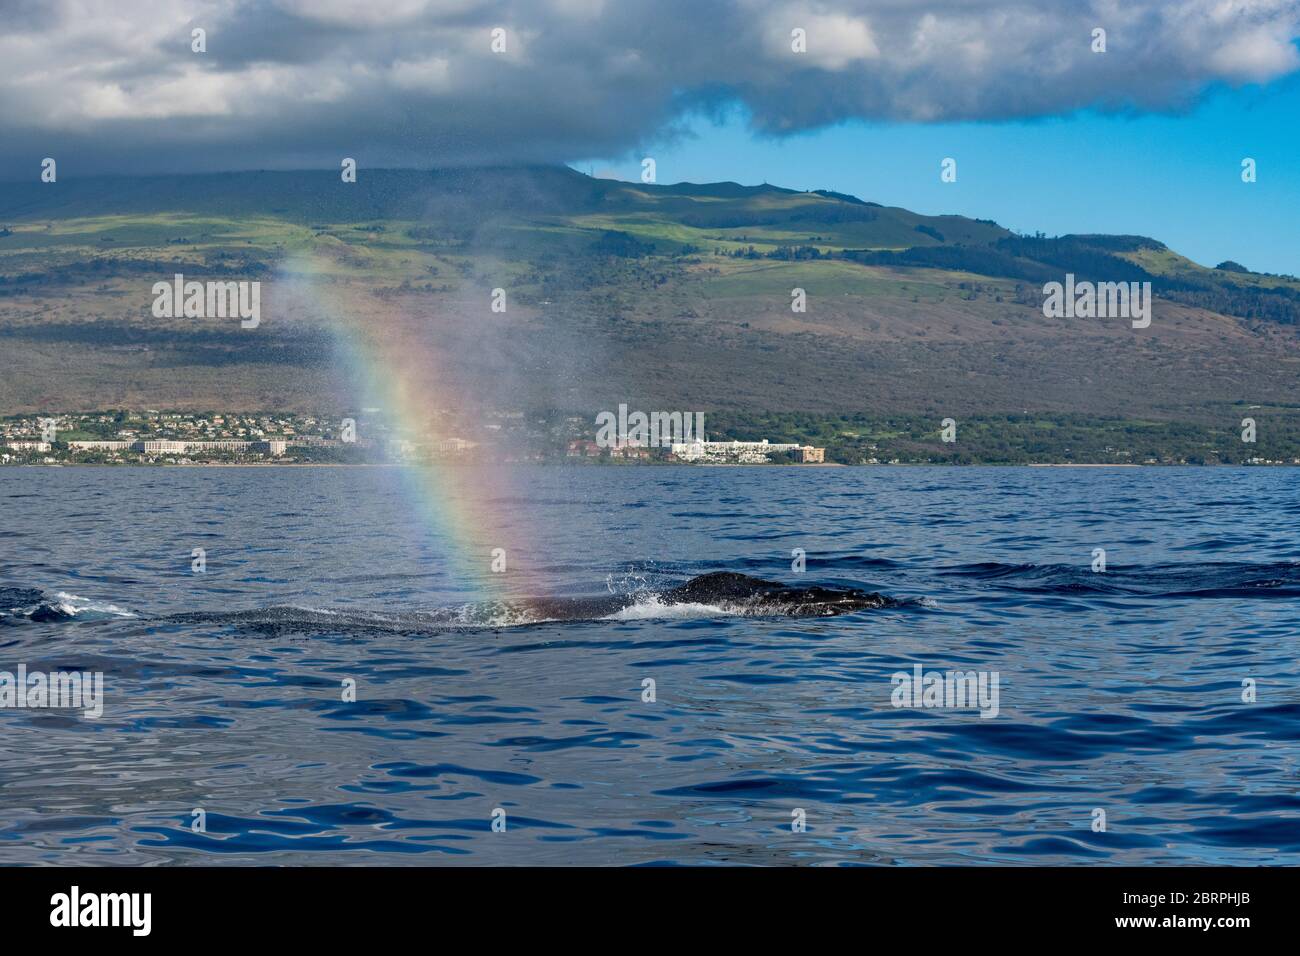 Auslauf oder Schlag von einem Buckelwal, Megaptera novaeangliae, hängt in der Luft, Brechung ein Wal Nebel Regenbogen oder Walbogen, Kihei, Maui, Hawaii, Hawai Stockfoto